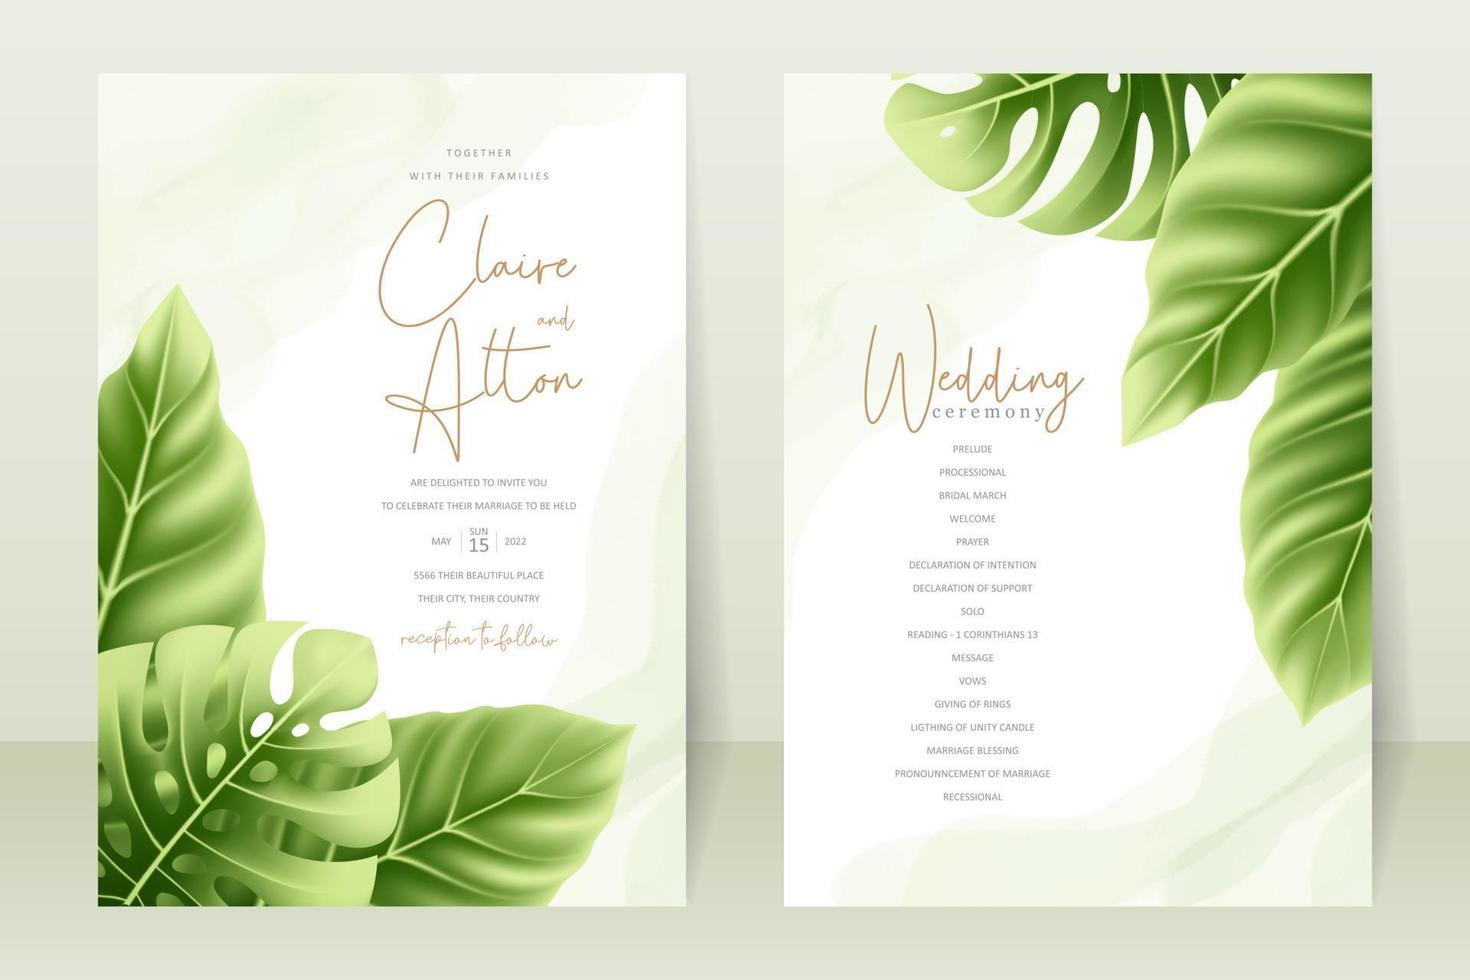 bröllopsinbjudan koncept med realistiska tropiska löv vektor